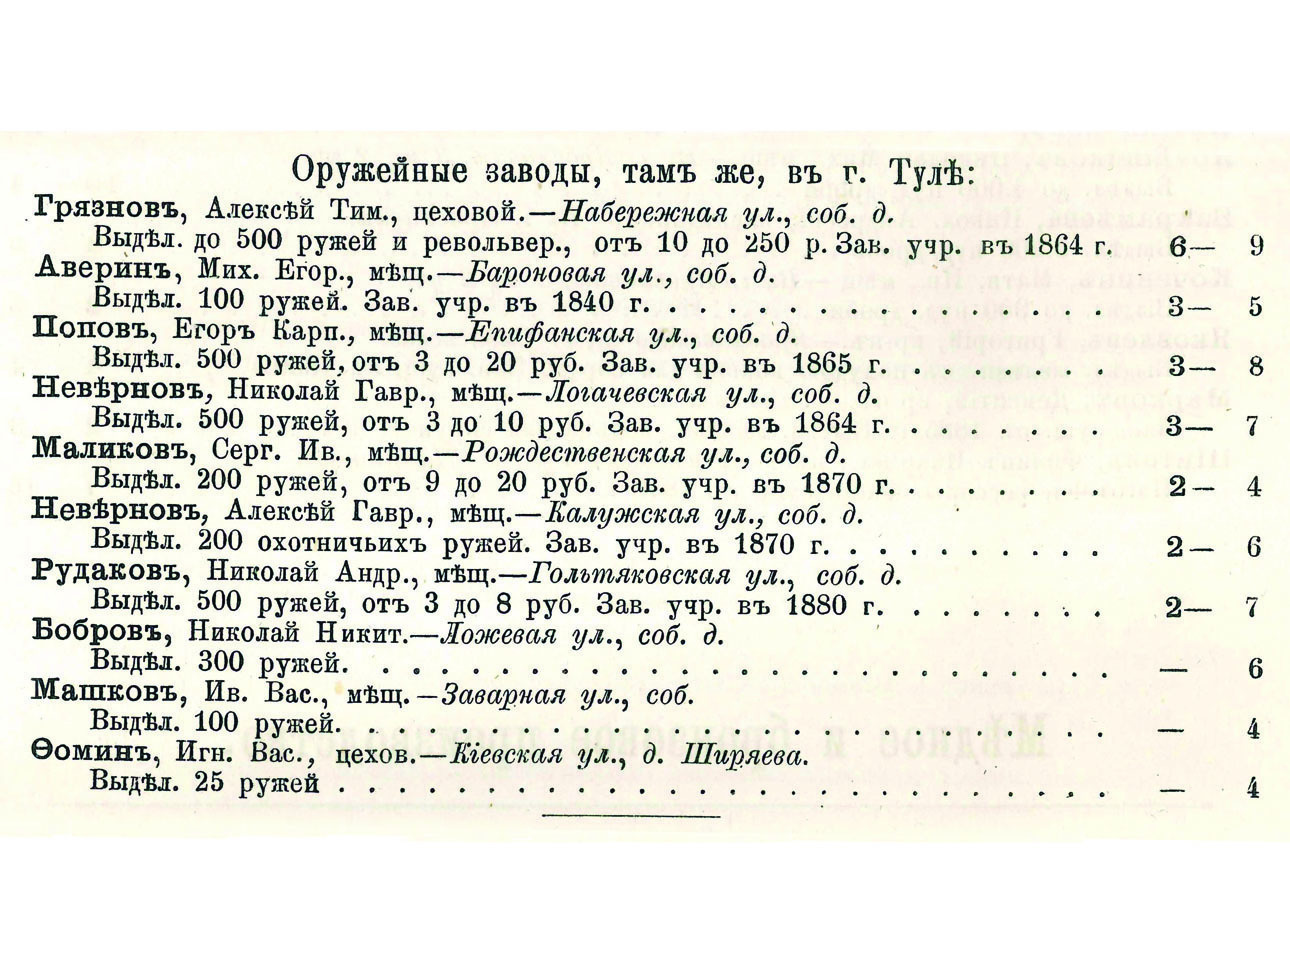 Изображение Перечень ведущих тульских «фабрикантов» по состоянию на 1887 год. Фото автора. 